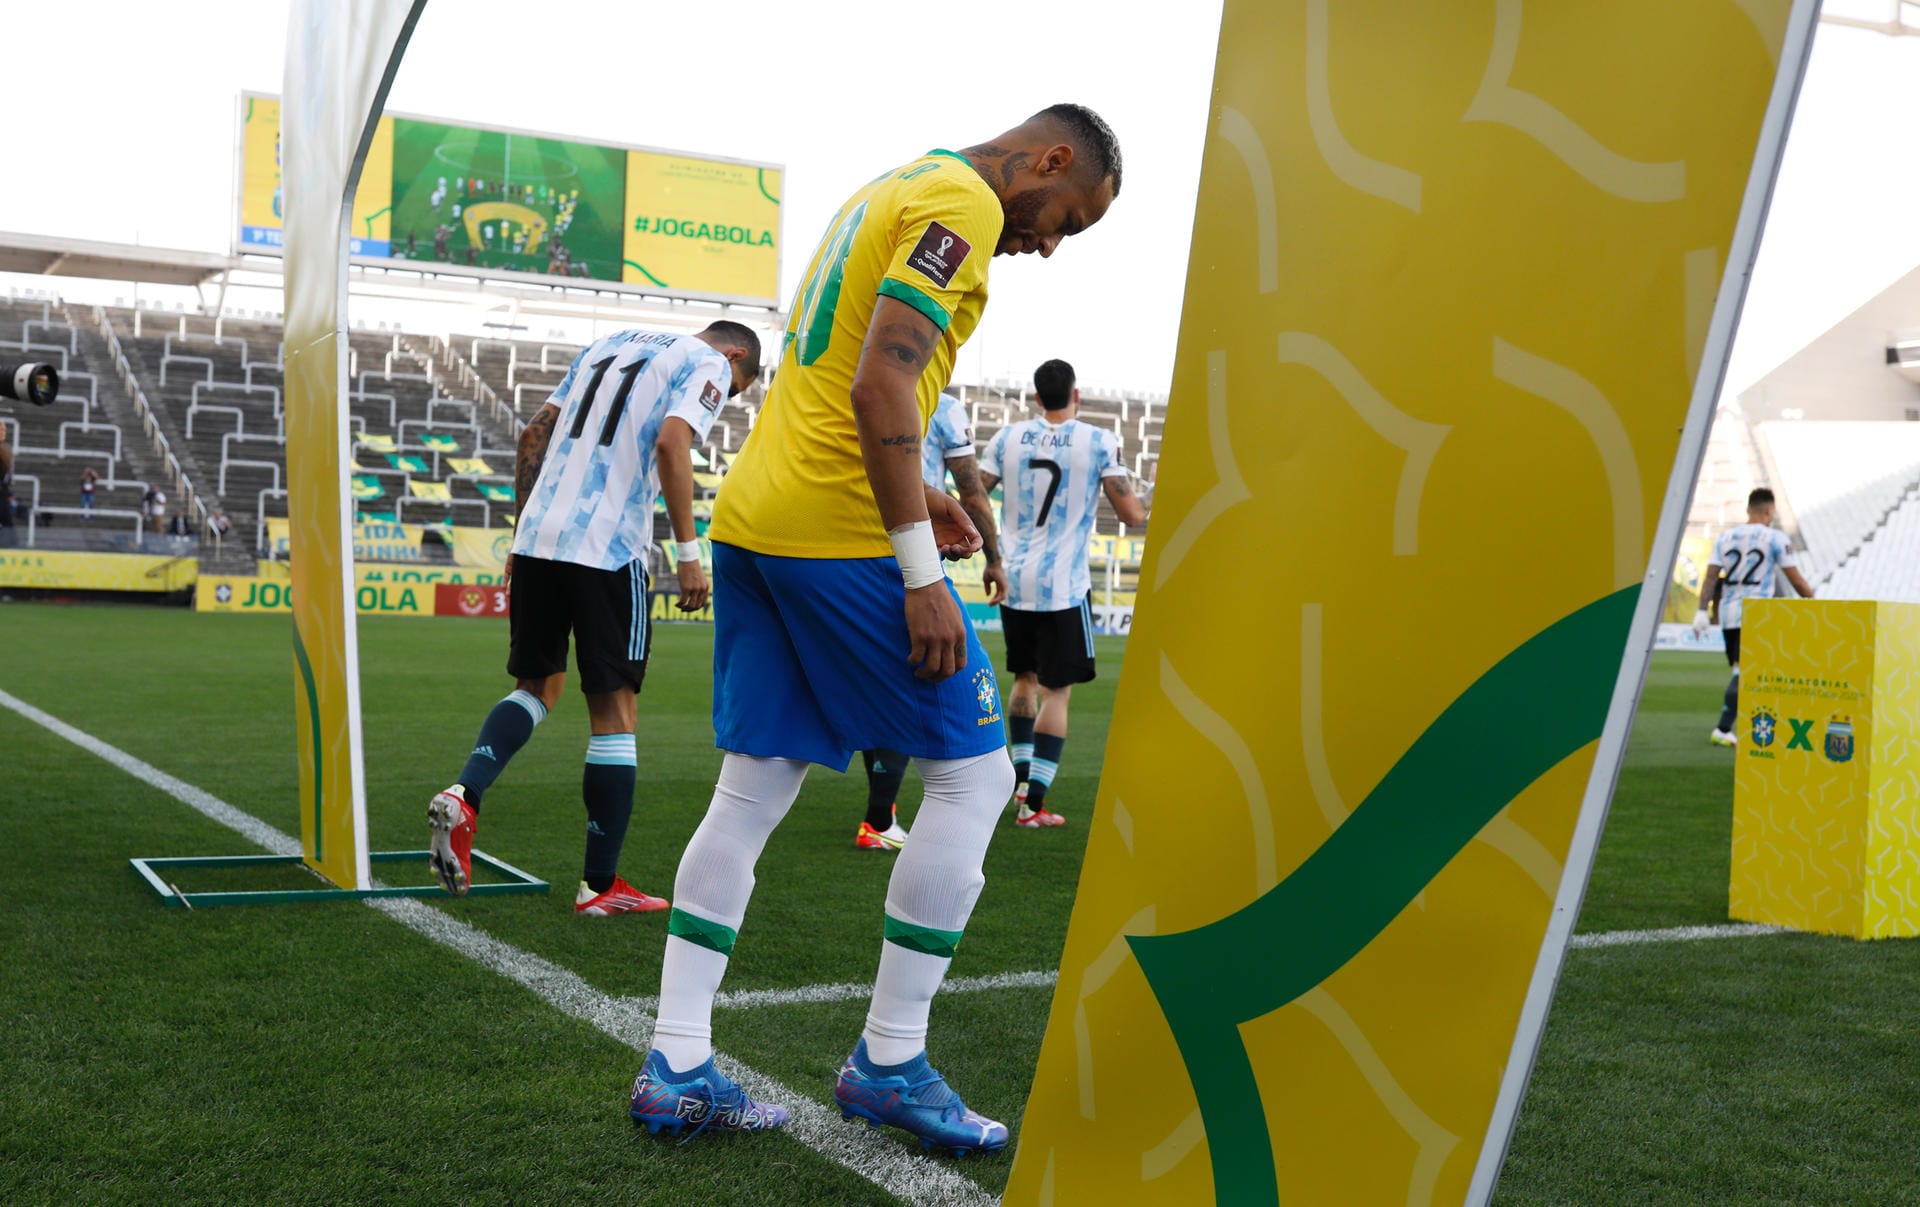 Die Spieler betreten den Platz. Kurz zuvor hatte die brasilianische Gesundheitsbehörde gegen vier argentinische Spieler eine Quarantäne verhängt. Drei von ihnen spielen trotzdem. Doch es macht den Anschein, als wäre die Situation geklärt. Kurze Zeit später wird klar, sie ist es nicht.